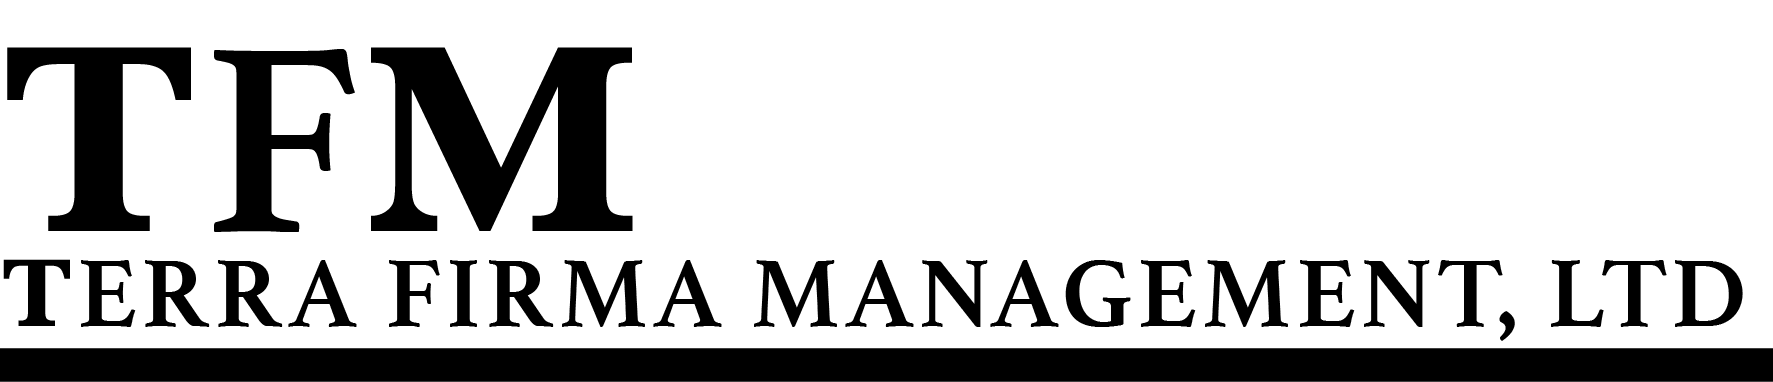 Terra Firma Management